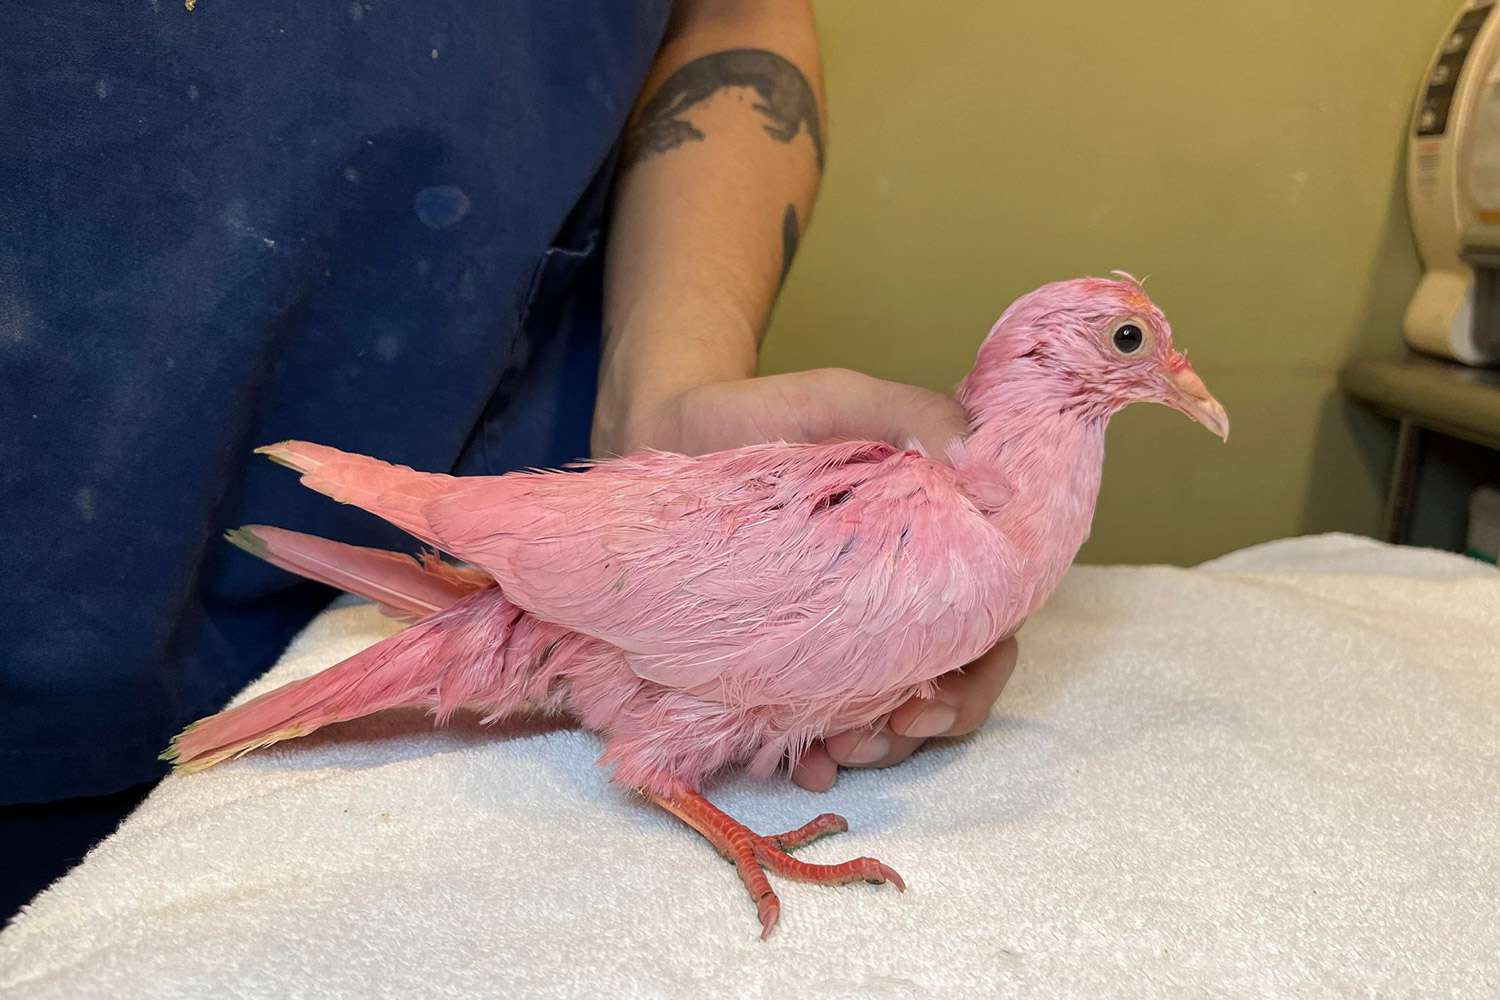 Animal Rescue avertit de «ne jamais teindre un oiseau» après la découverte d'un pigeon rose «en difficulté» errant à New York